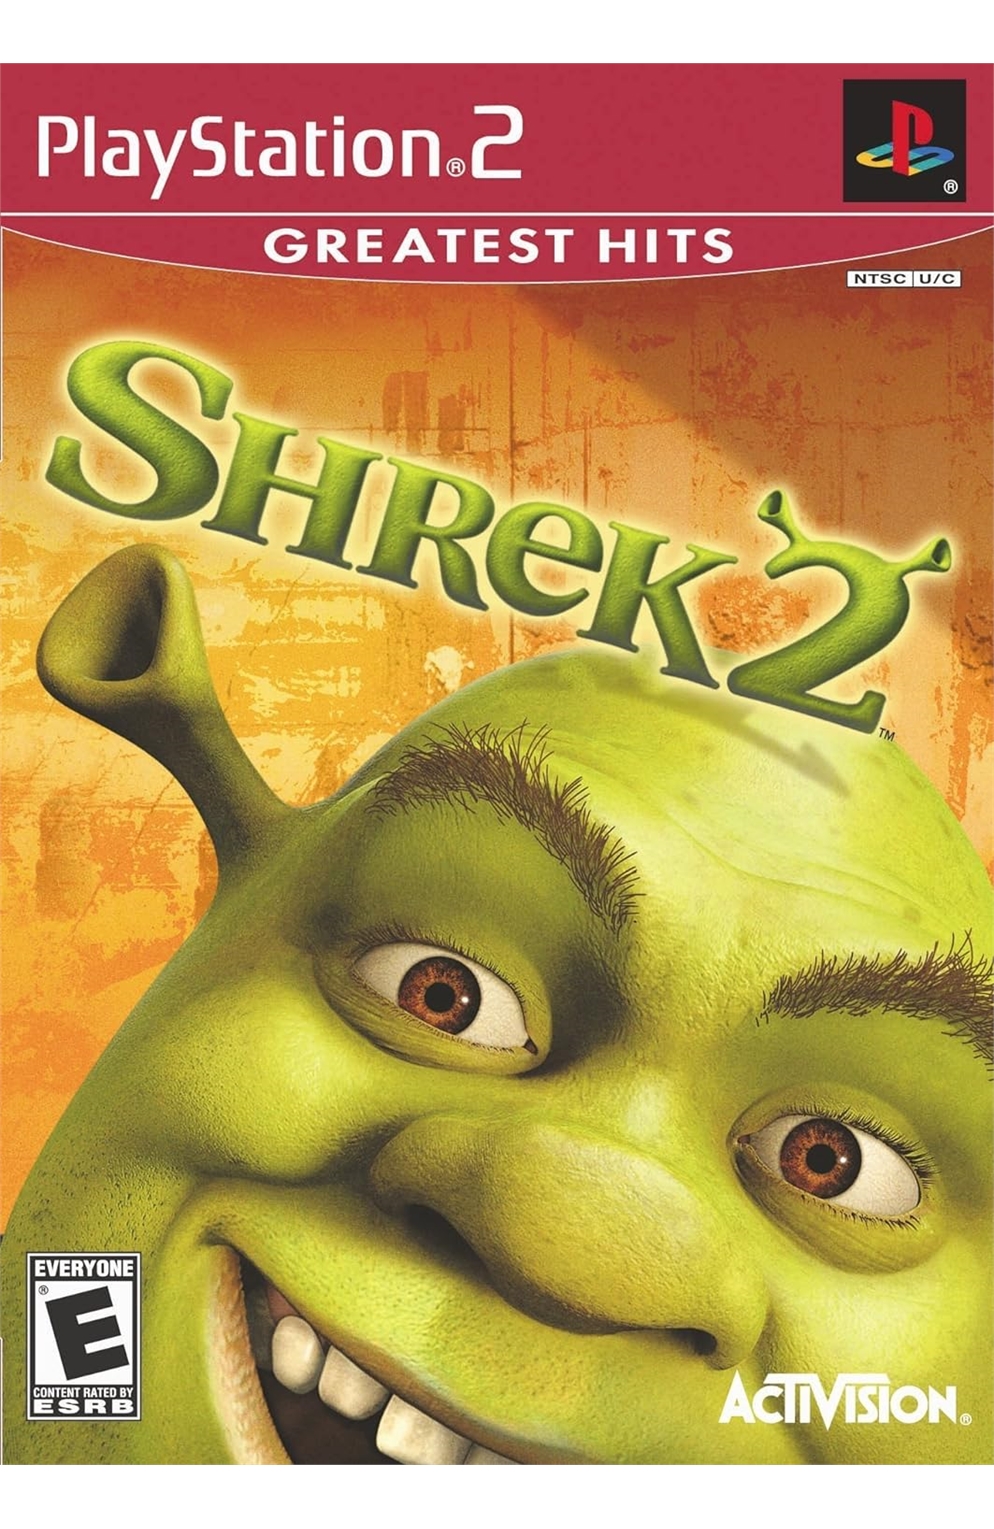 Playstation 2 PS2 Shrek 2